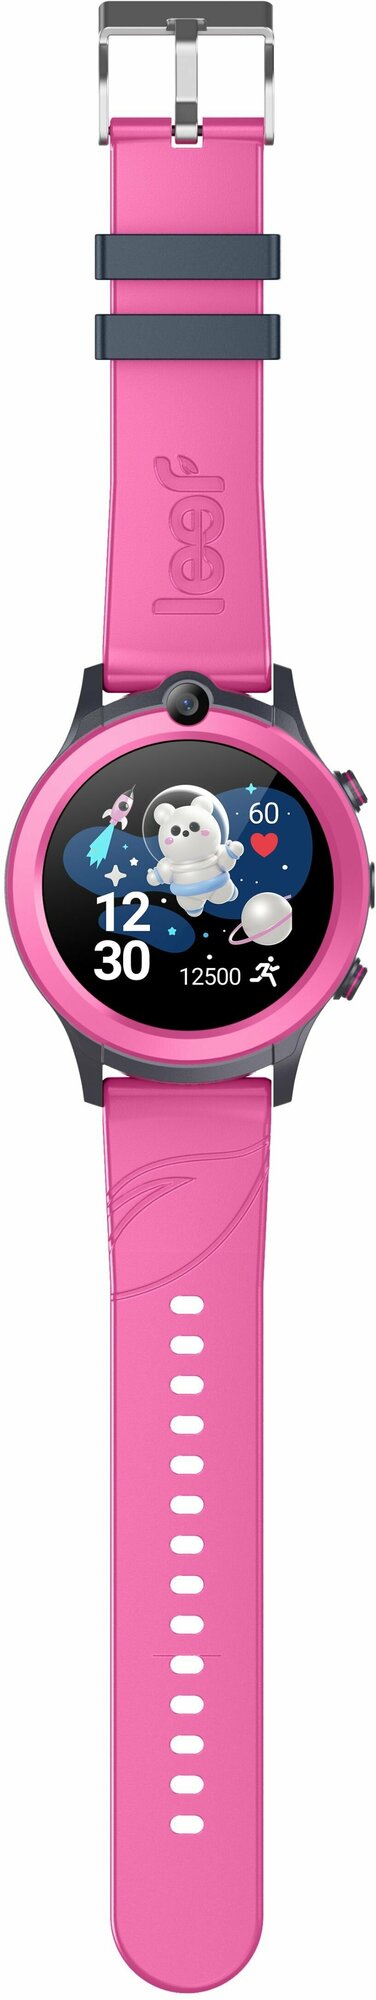 Детские умные GPS часы LEEF Vega c видеозвонком 4G, голосовой помощник "Маруся", цвет розово-серый